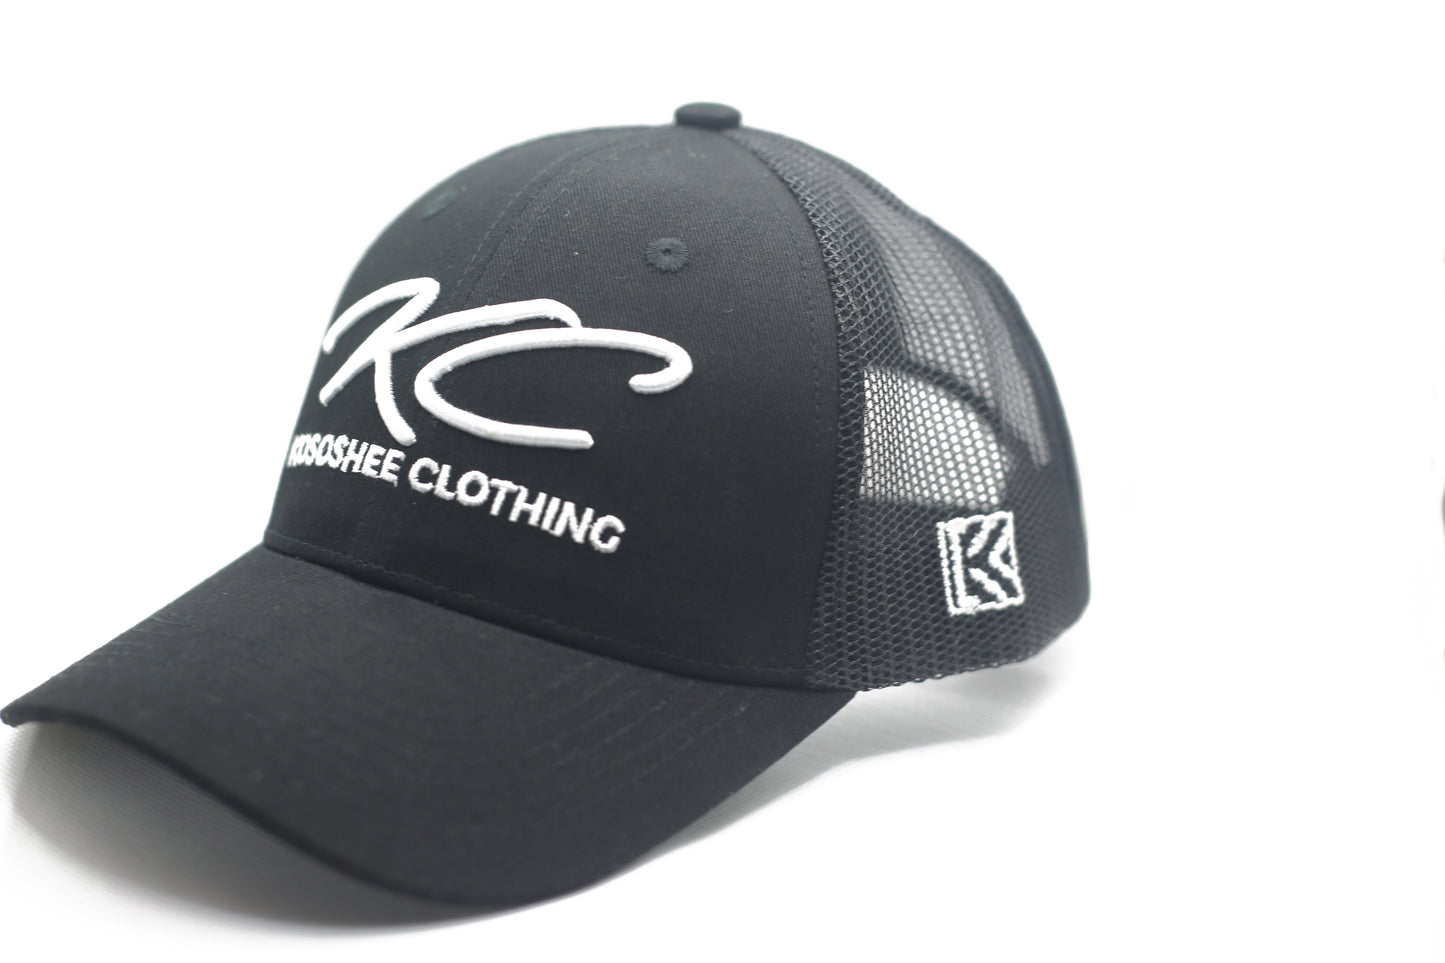 Kososhee Clothing Black Trucker Hat